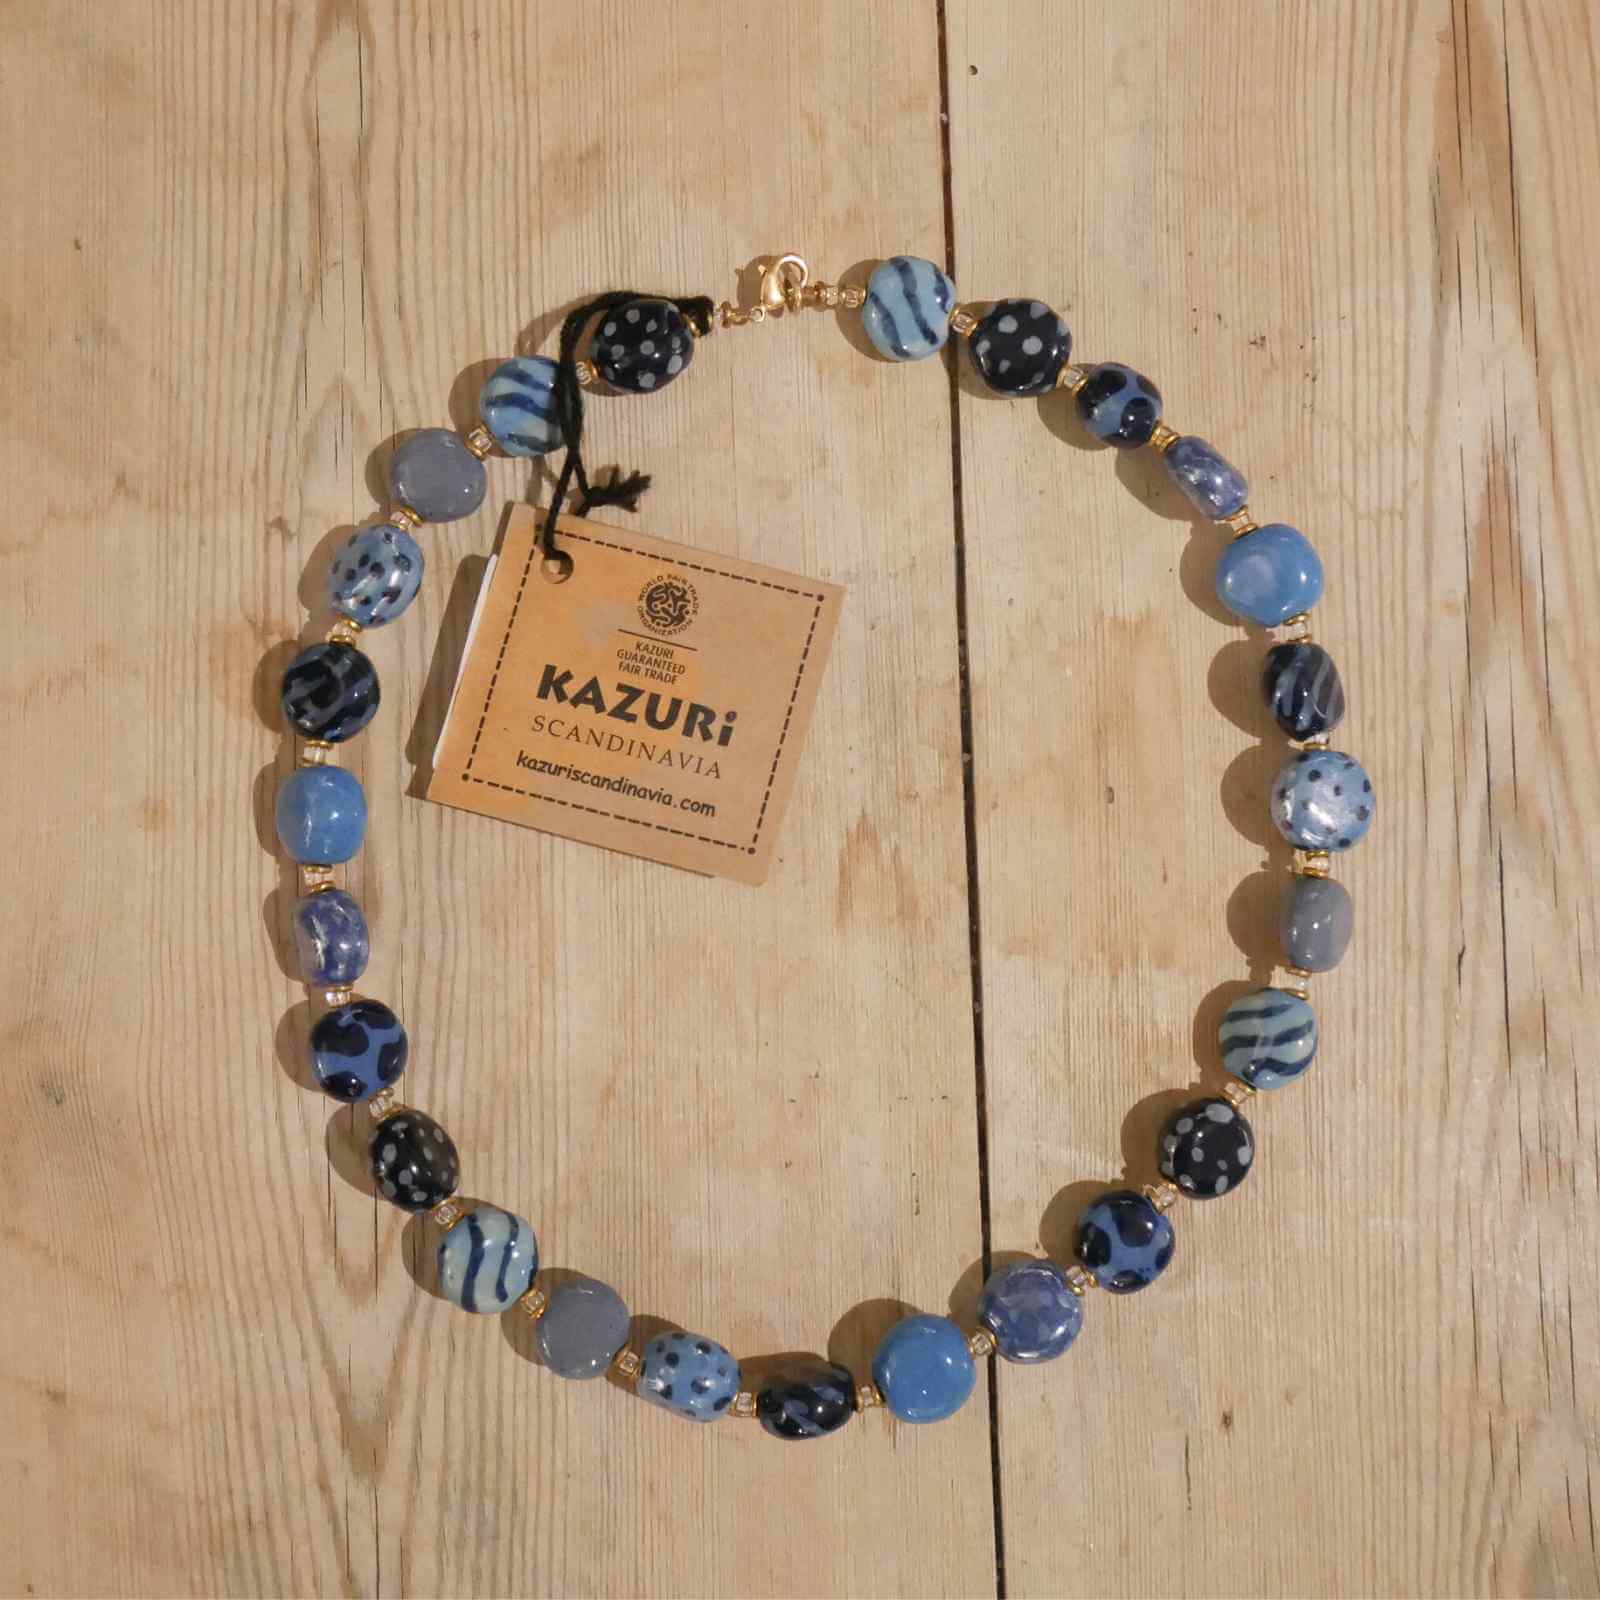 Kazuri halskæde med blå keramiske perler i model Tombola